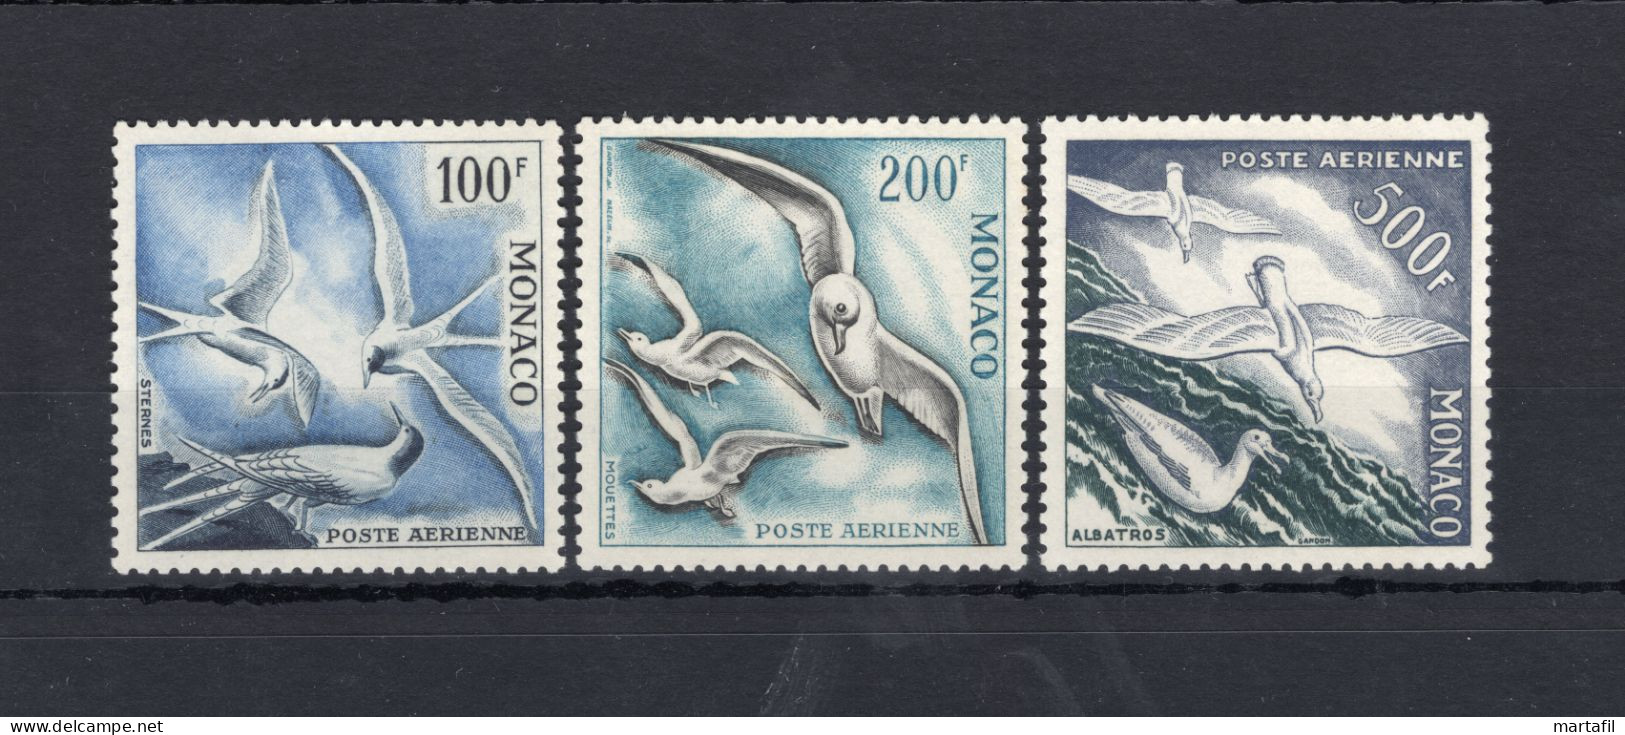 1955 MONACO Posta Aerea, Uccelli Marini A55/A57 MNH ** - Airmail